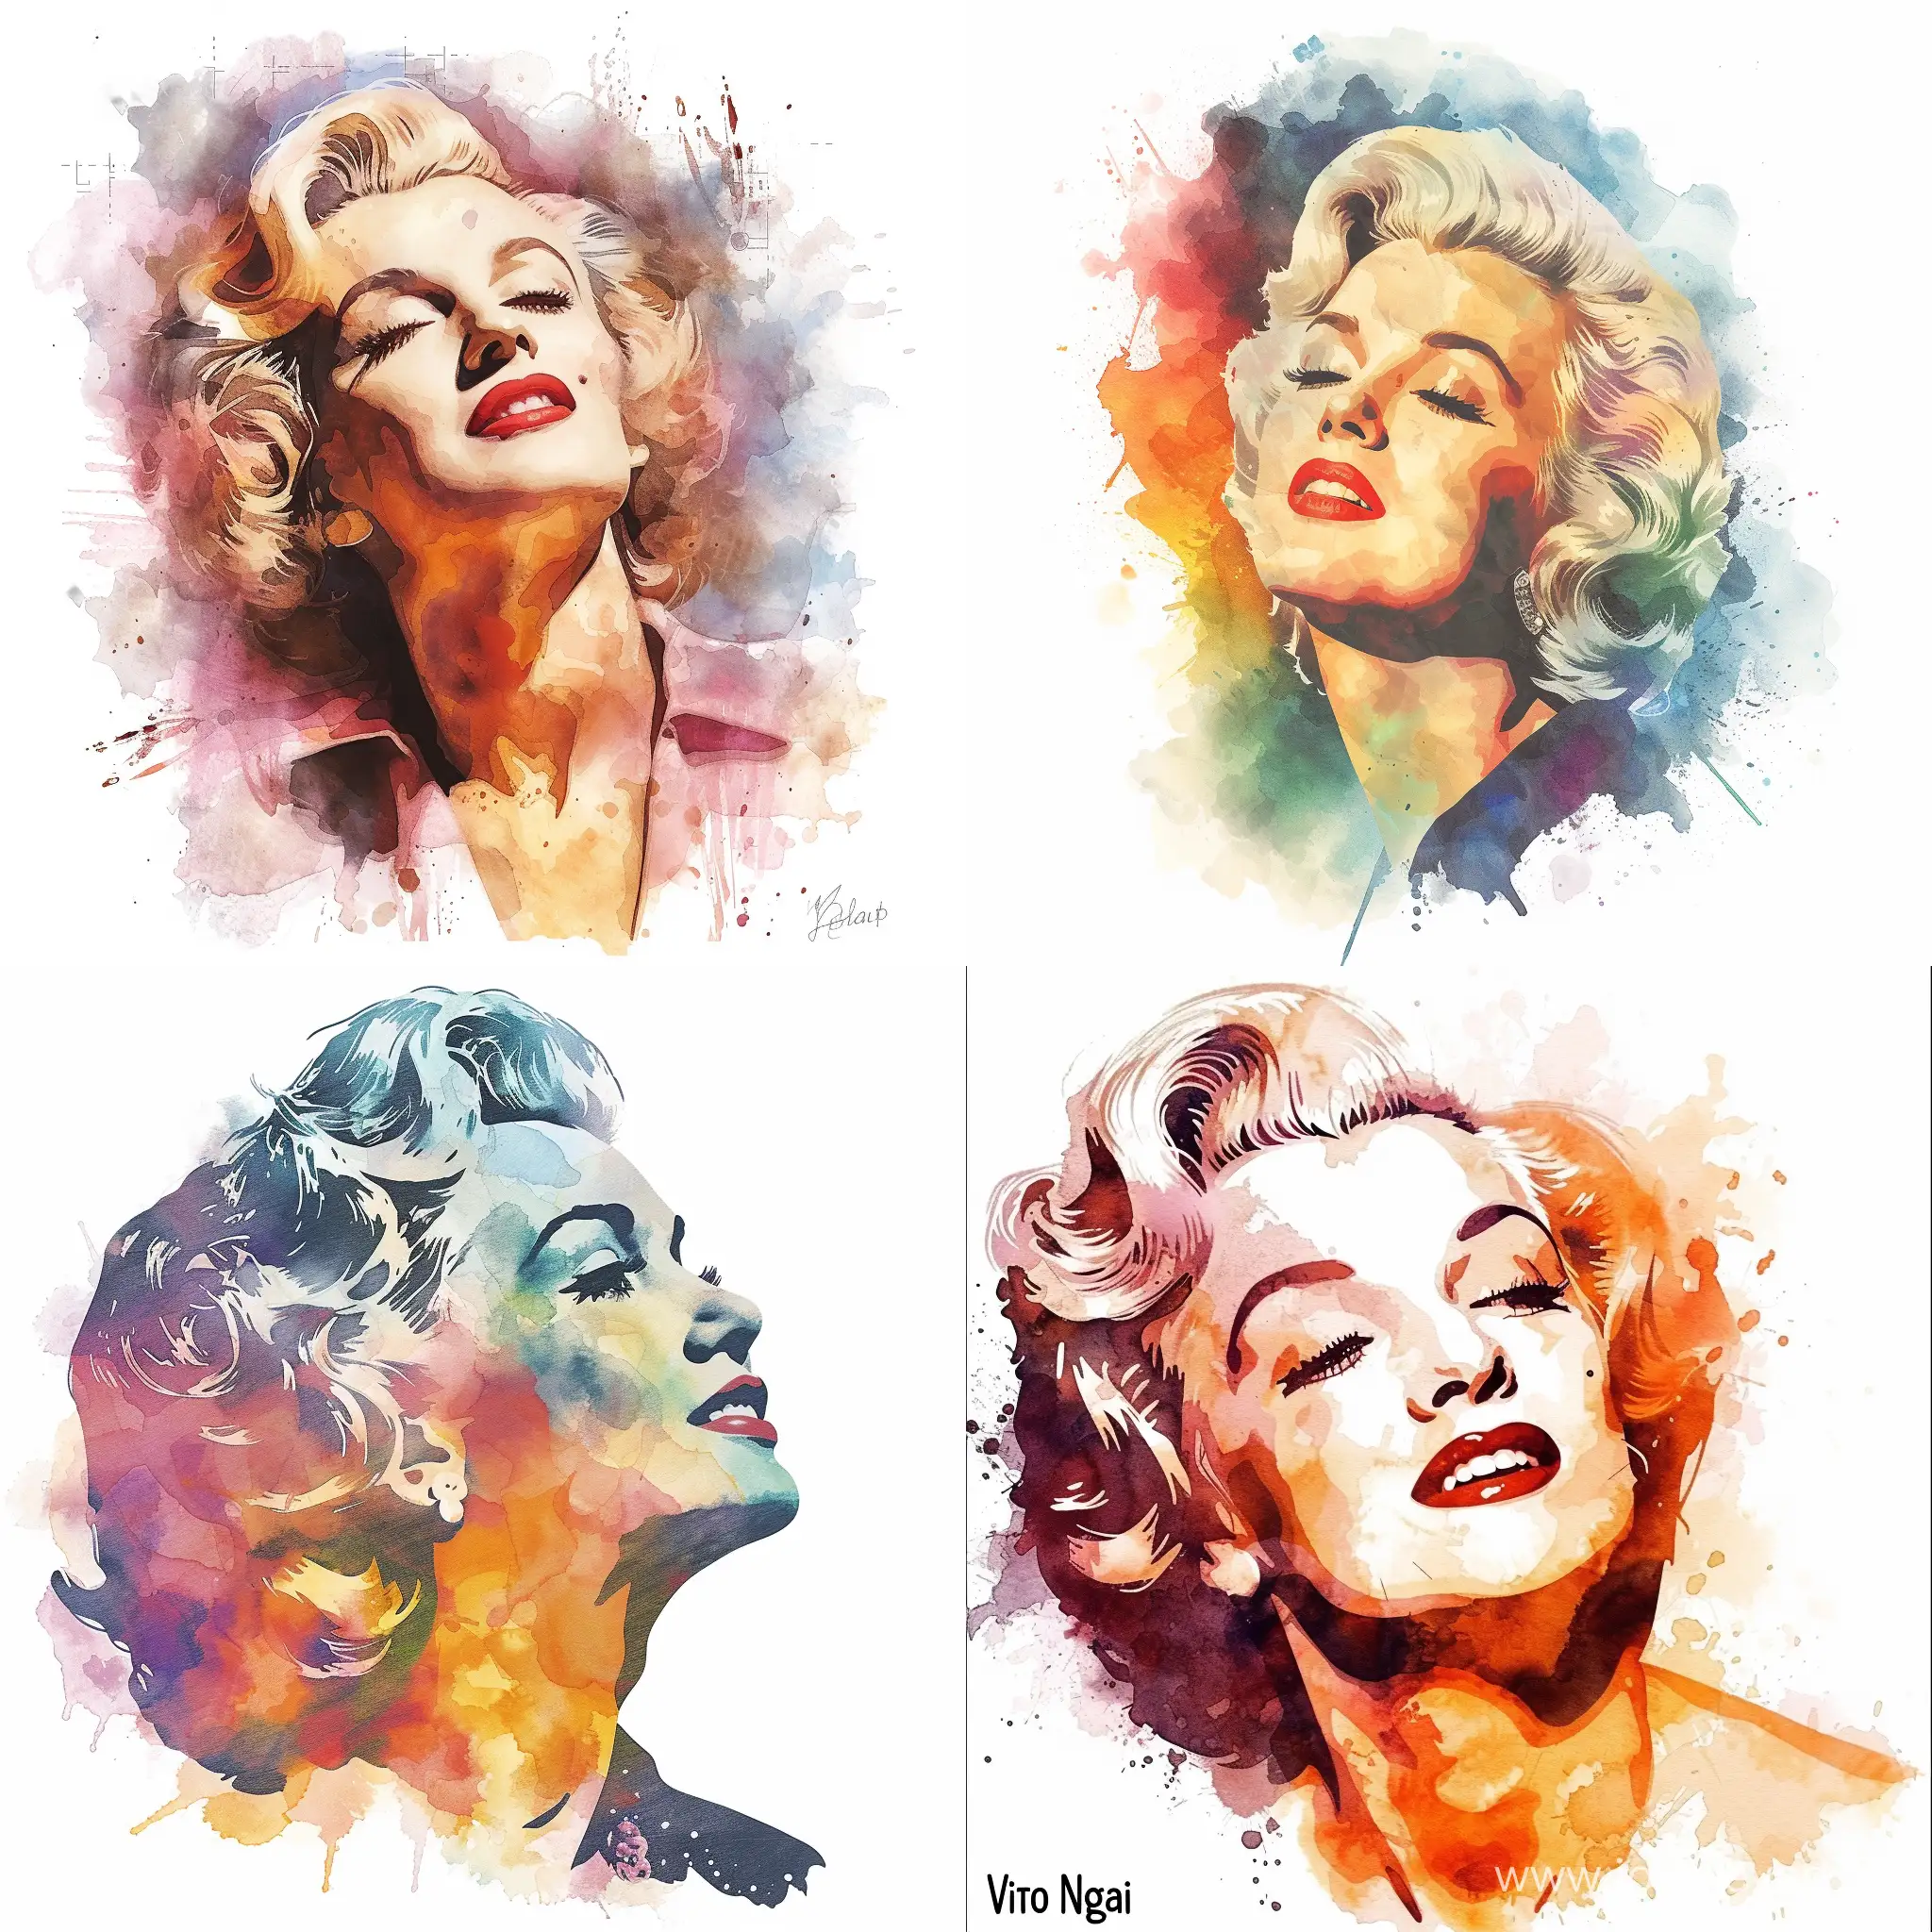 Profile-Portrait-of-Marilyn-Monroe-in-Watercolor-Illustration